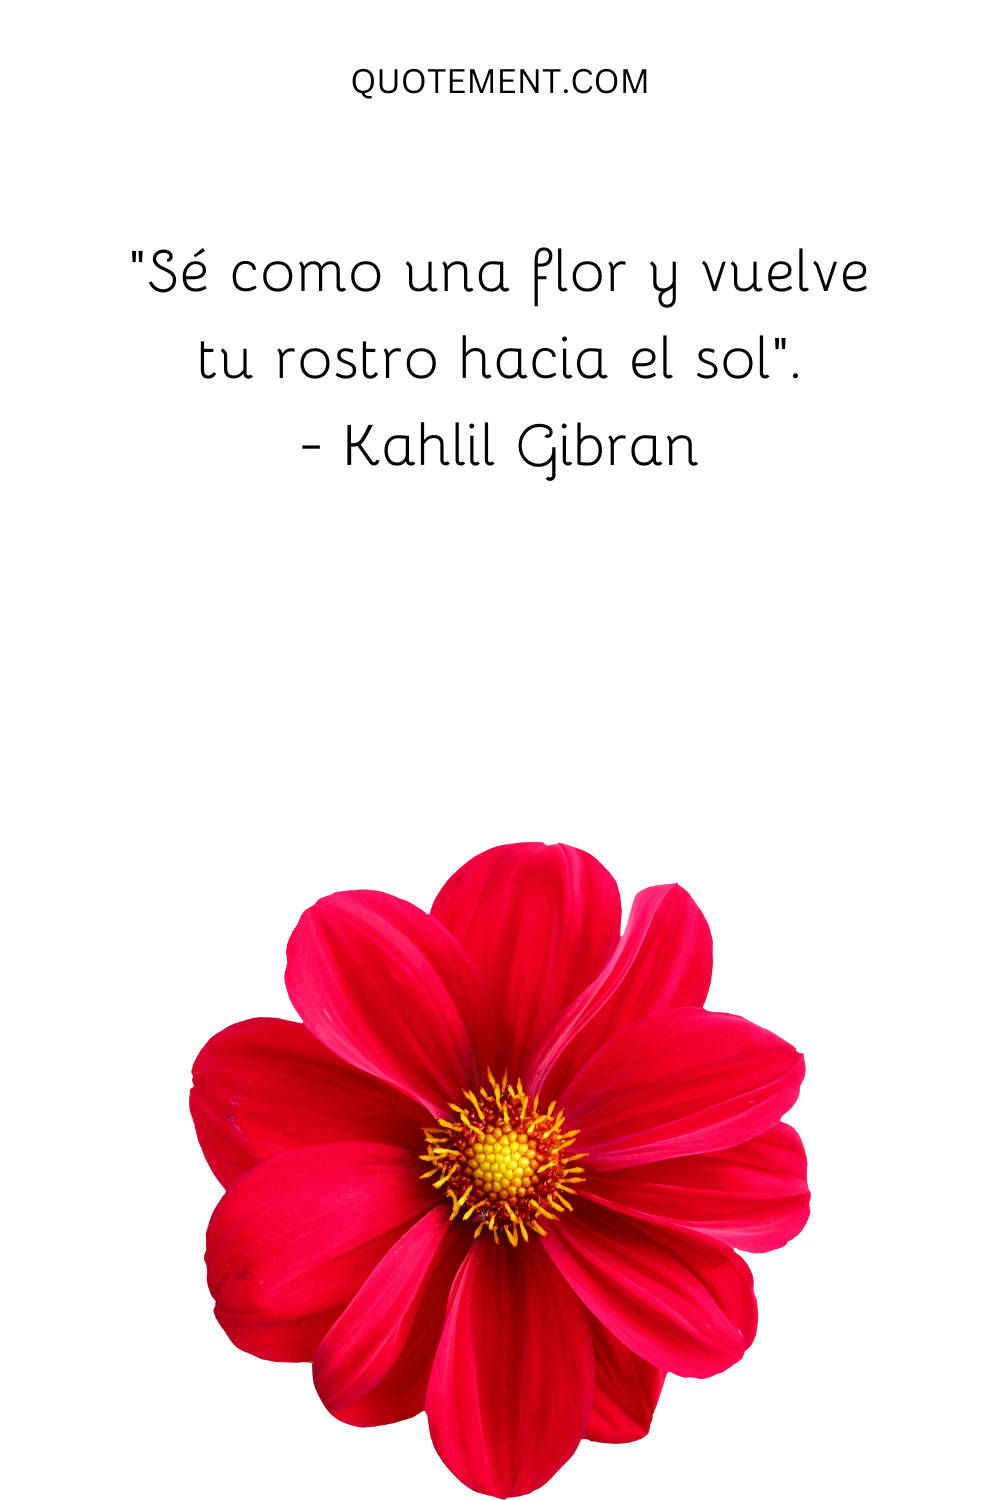 "Sé como una flor y vuelve tu rostro hacia el sol". - Kahlil Gibran